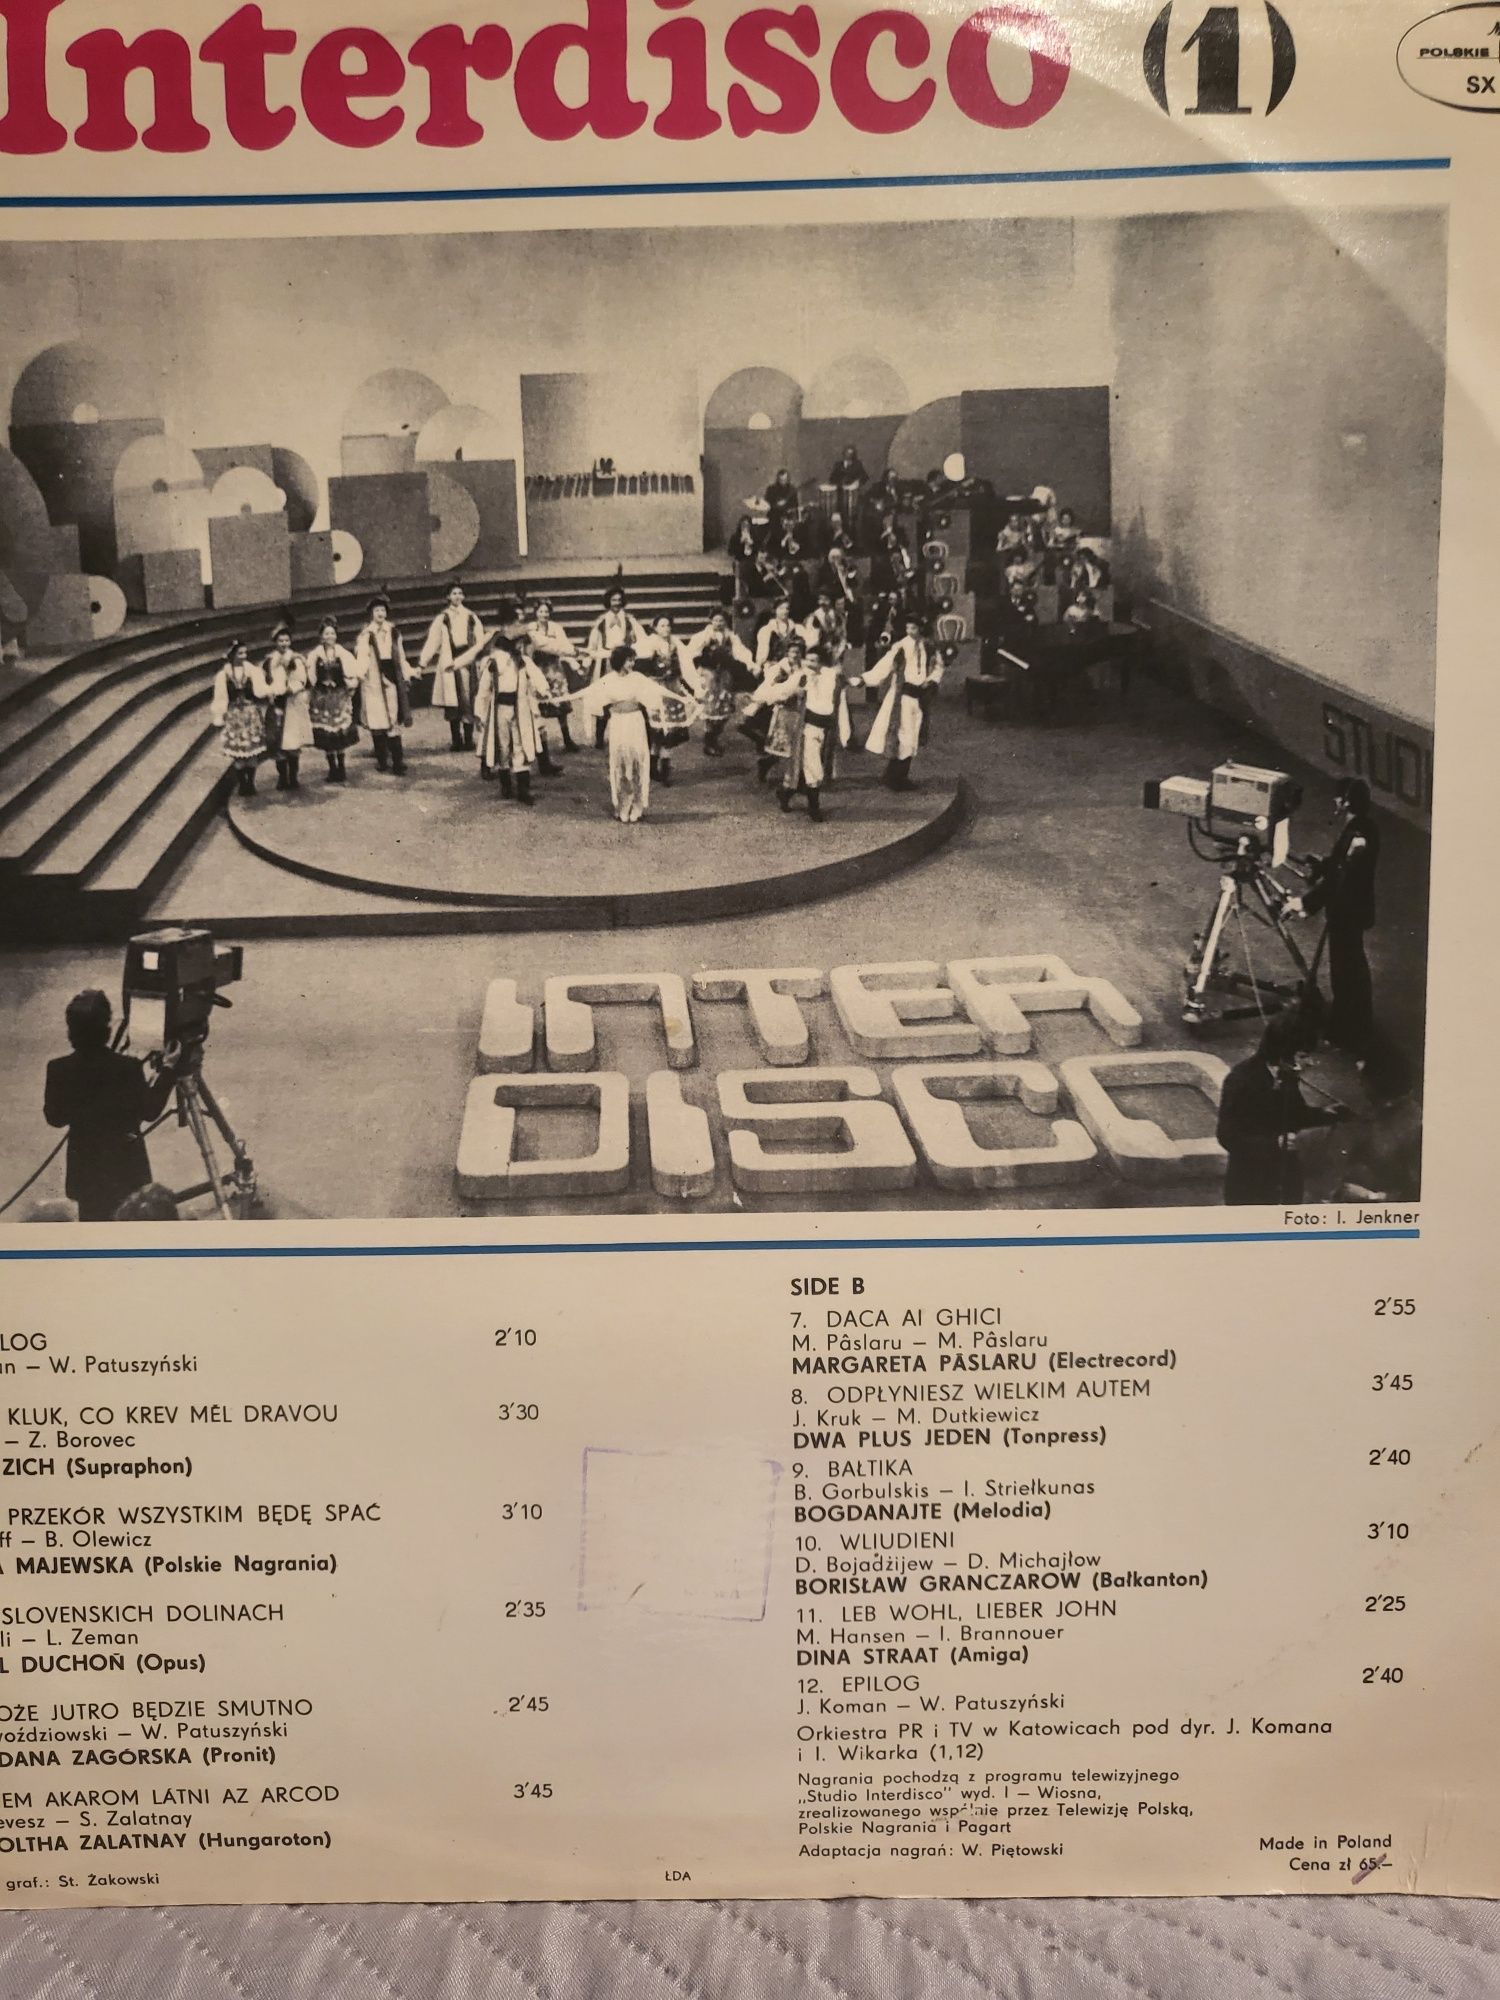 Nieużywana , nowa płyta winyl  INTERDISCO  1  - Muza 1980 r